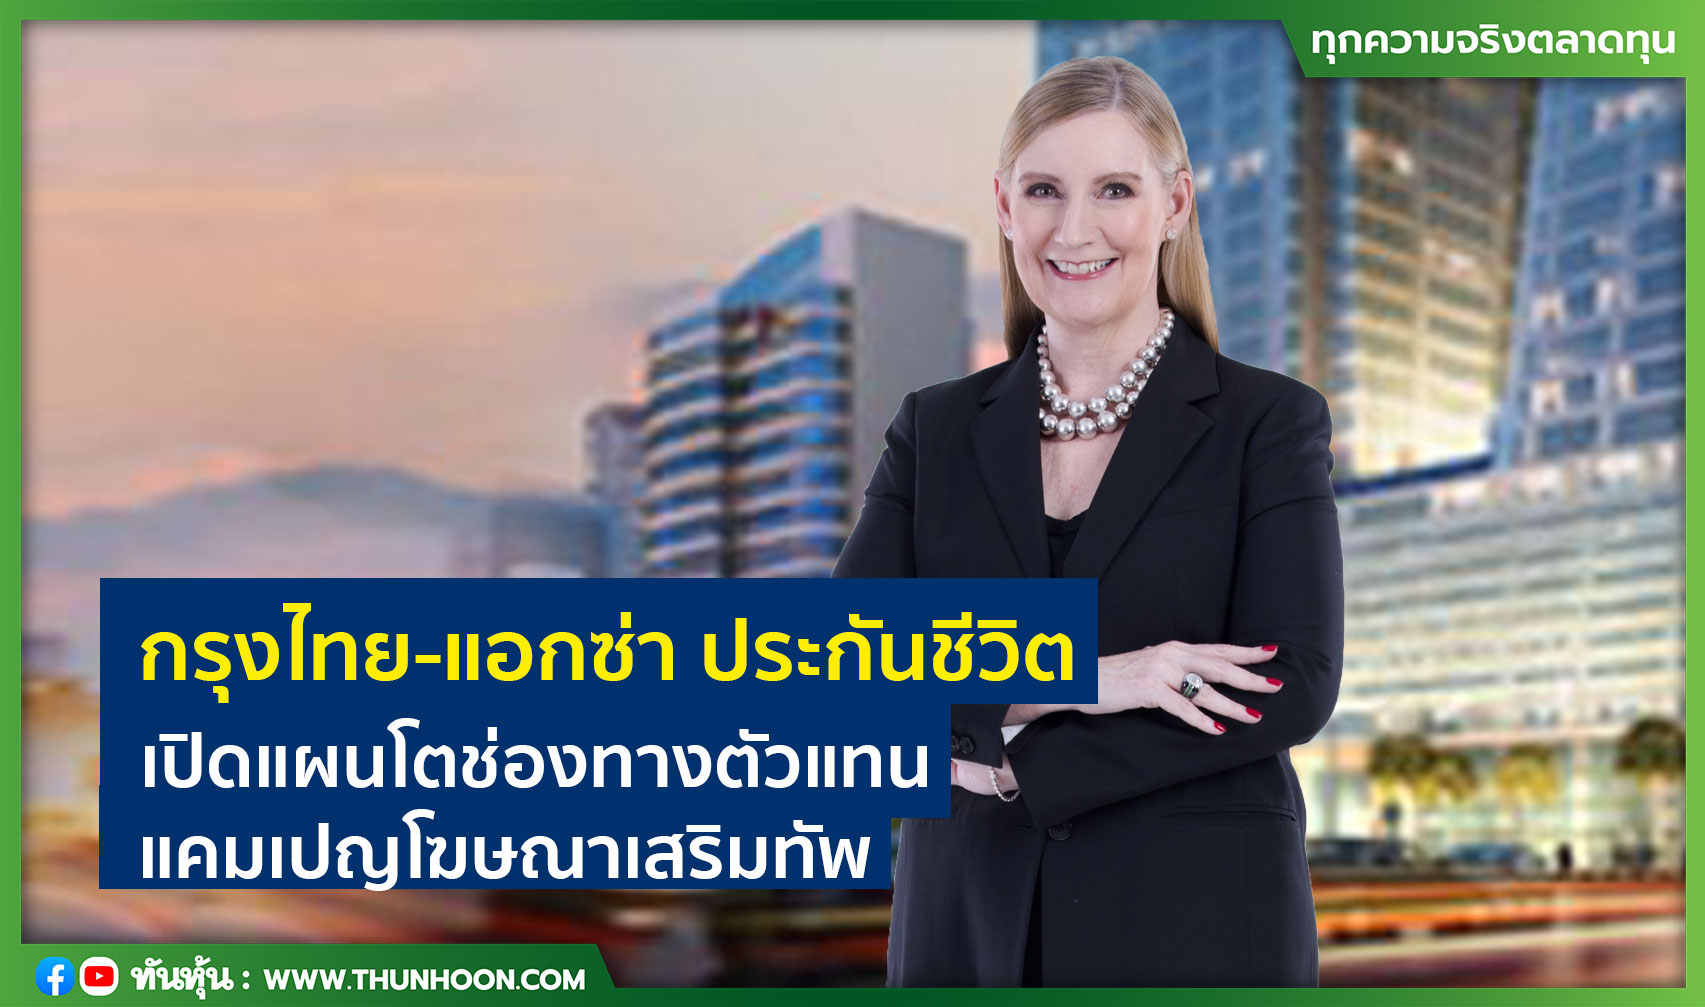 กรุงไทย-แอกซ่า ประกันชีวิต  เปิดแผนโตช่องทางตัวแทน แคมเปญโฆษณาเสริมทัพ